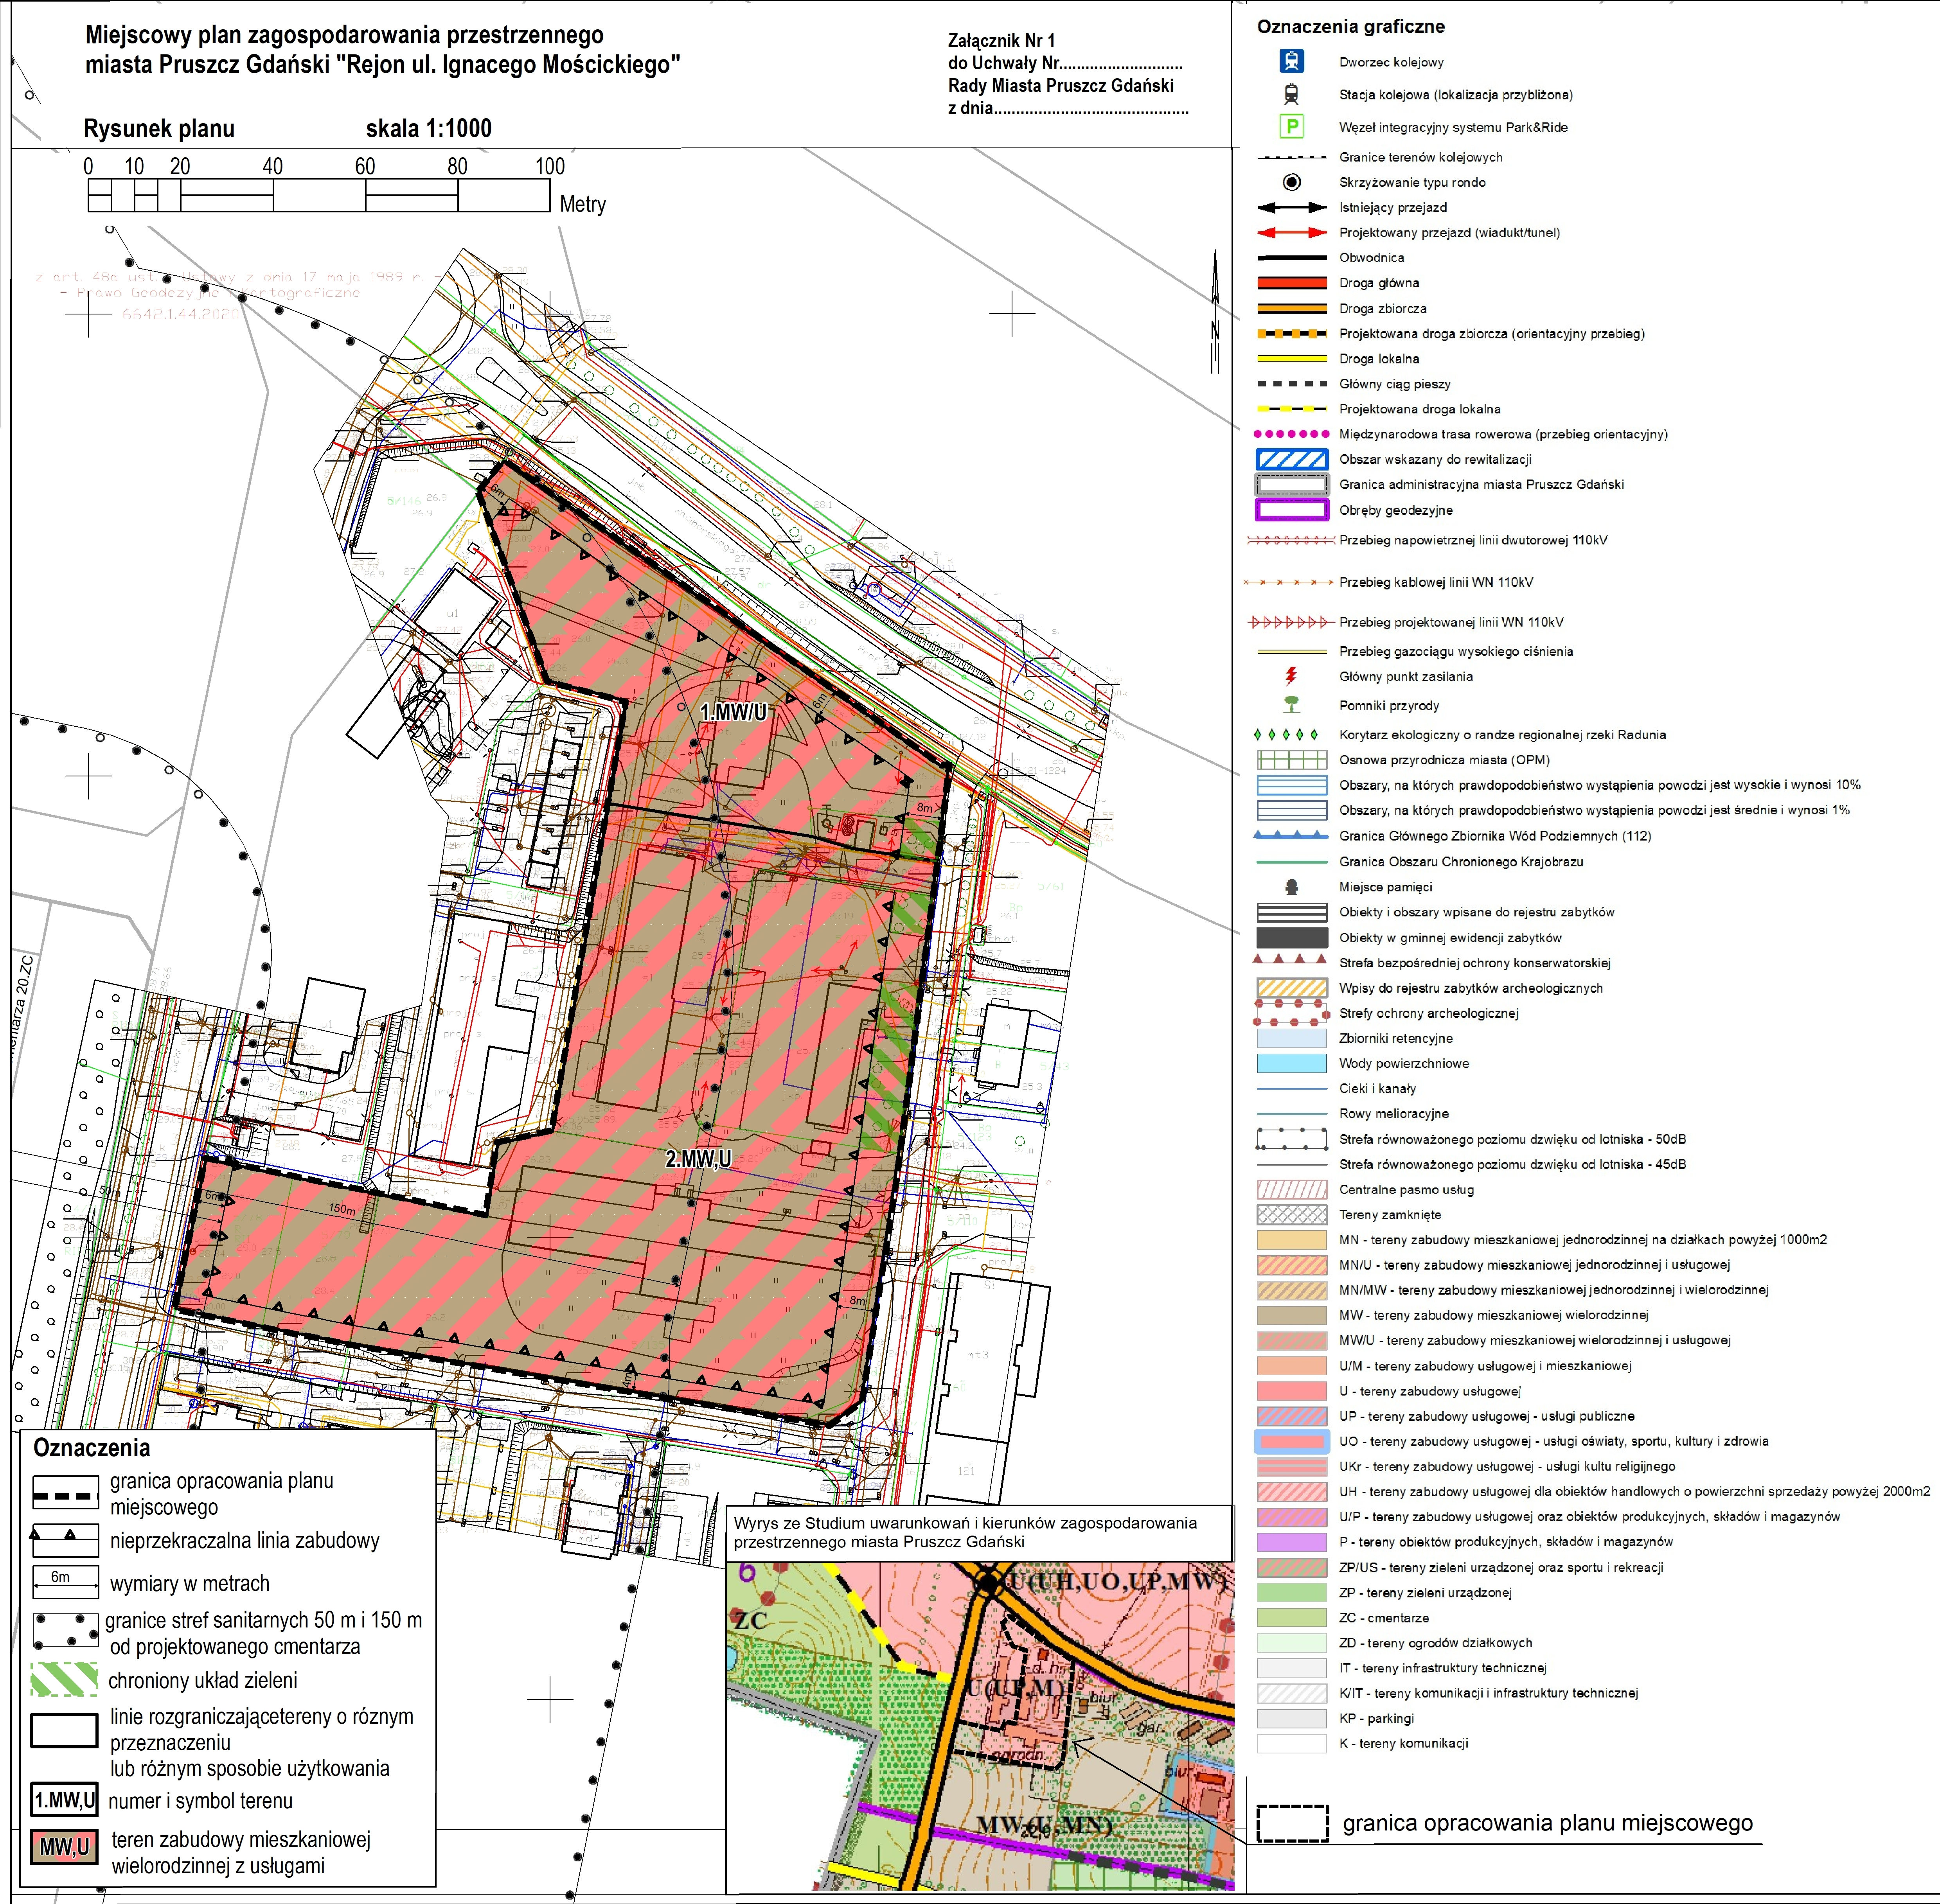 Rysunek planu zagospodarowania przestrzennego miasta Pruszcz Gdański 